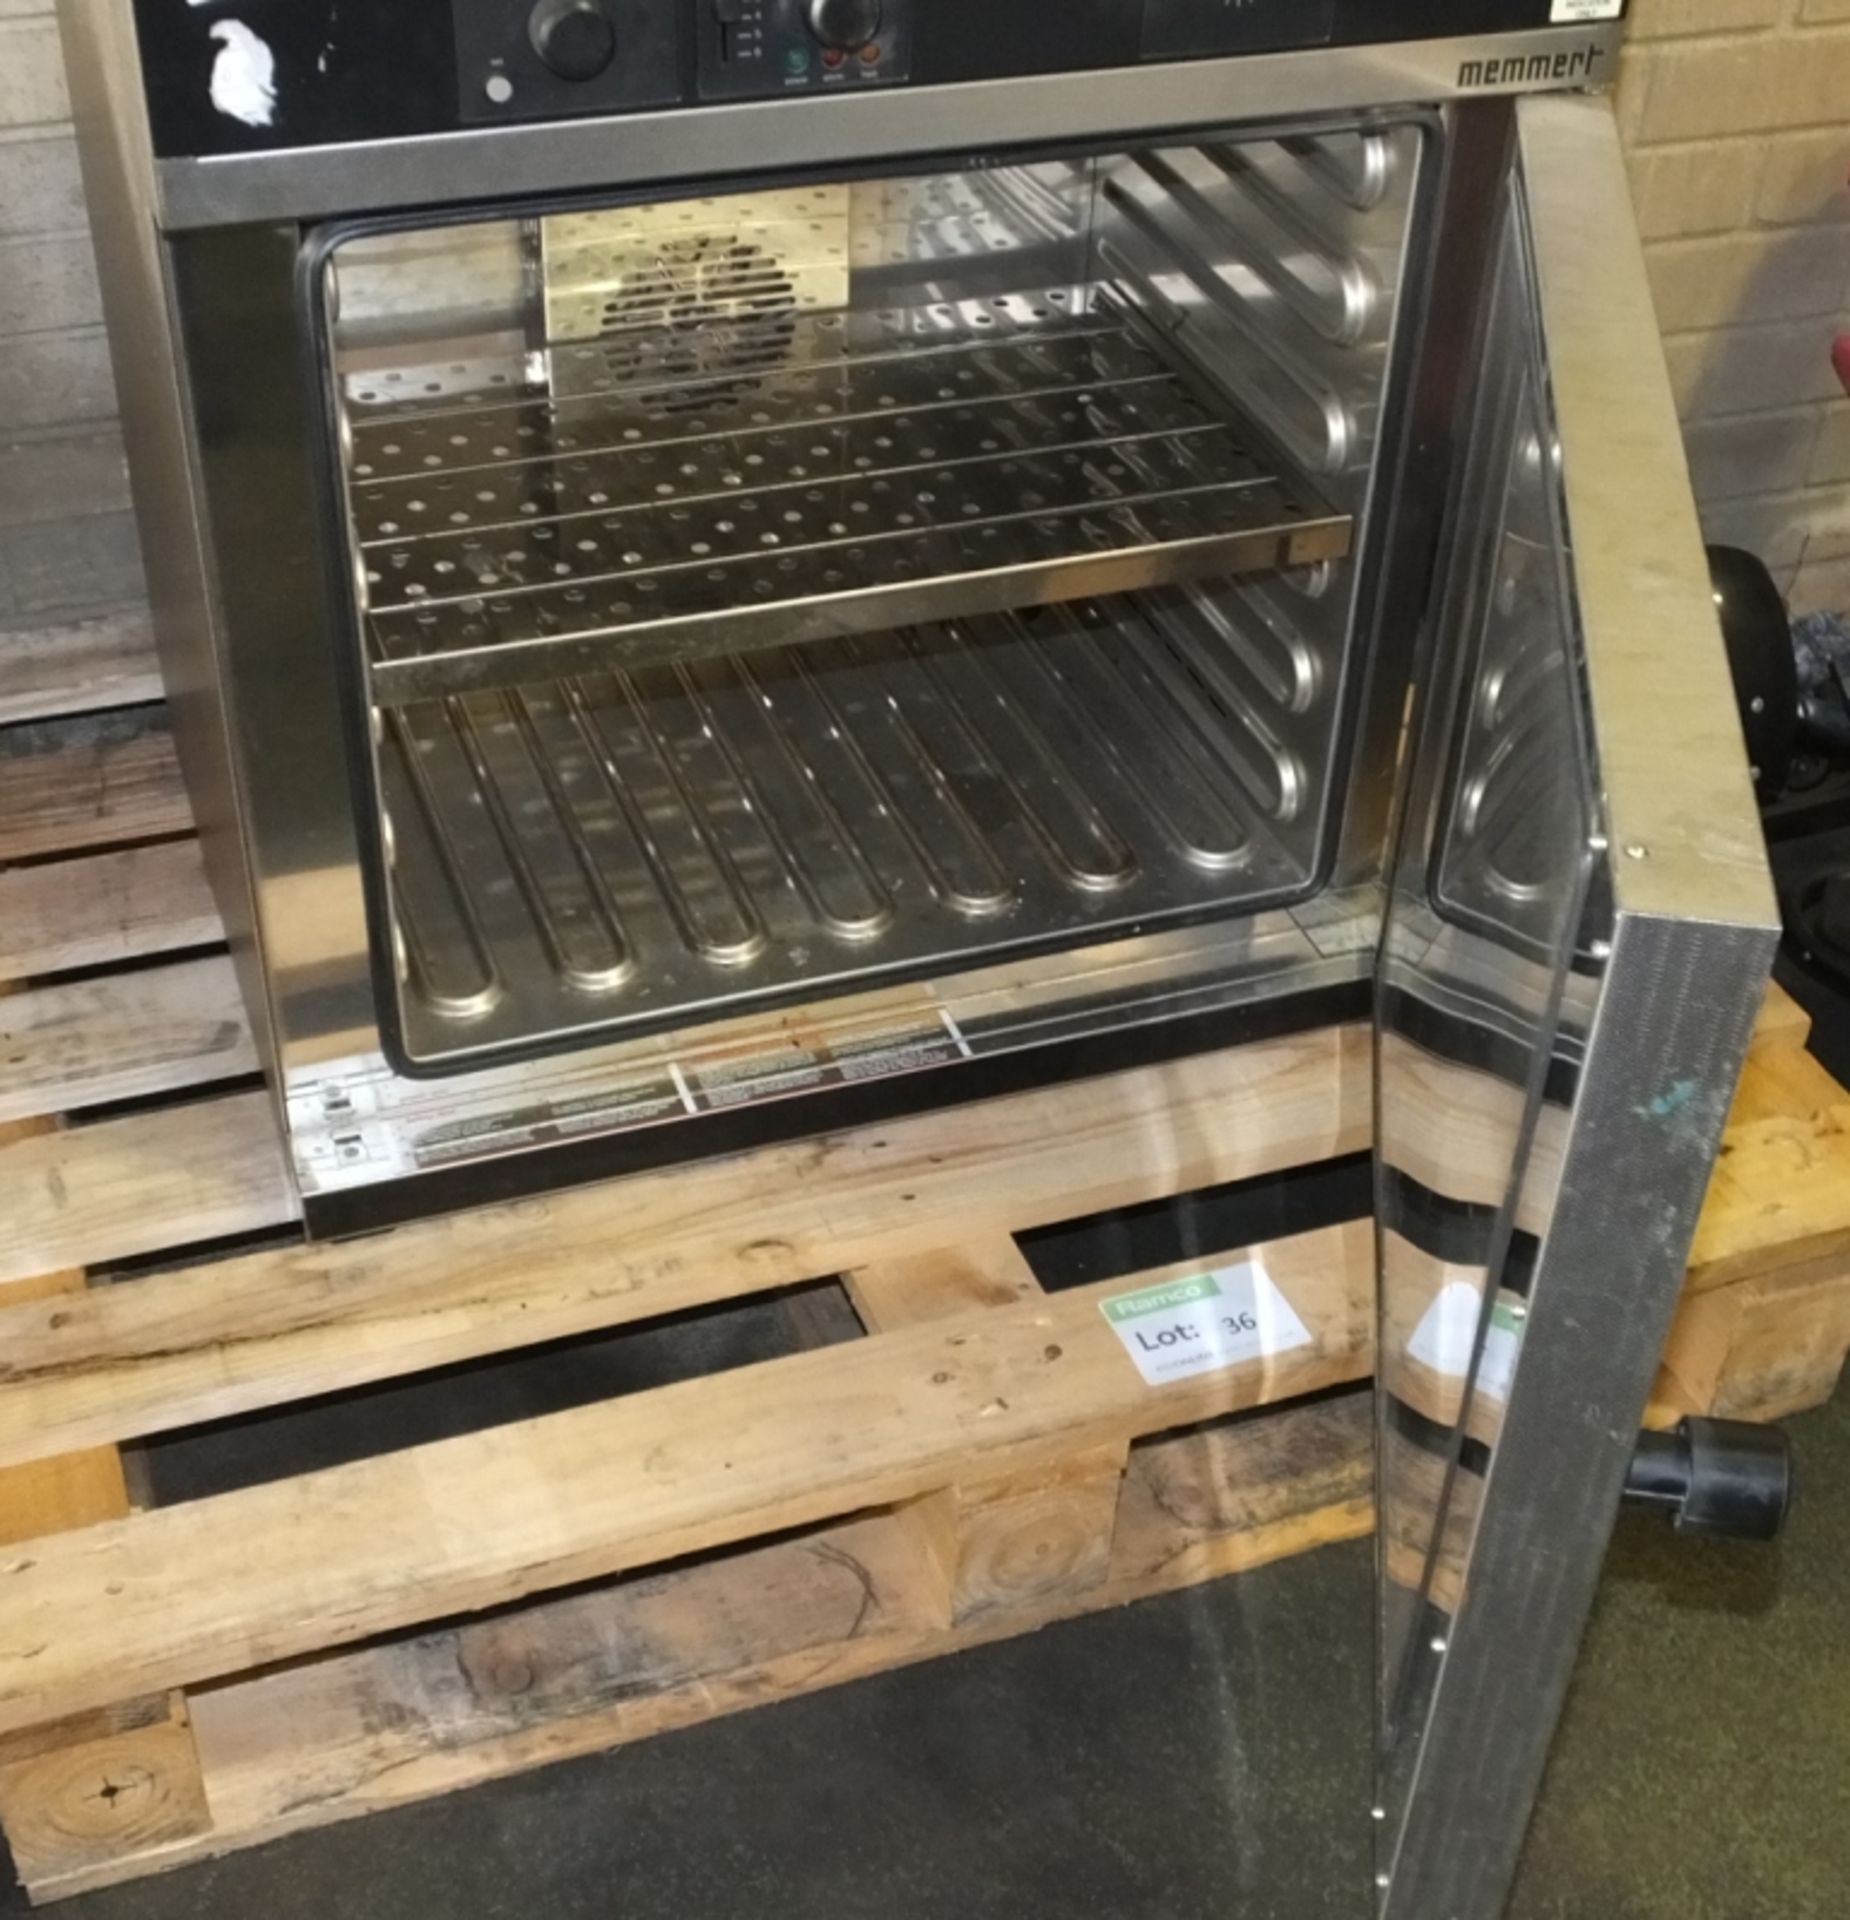 Memmert Laboratory Drying Oven 230v - Image 3 of 3